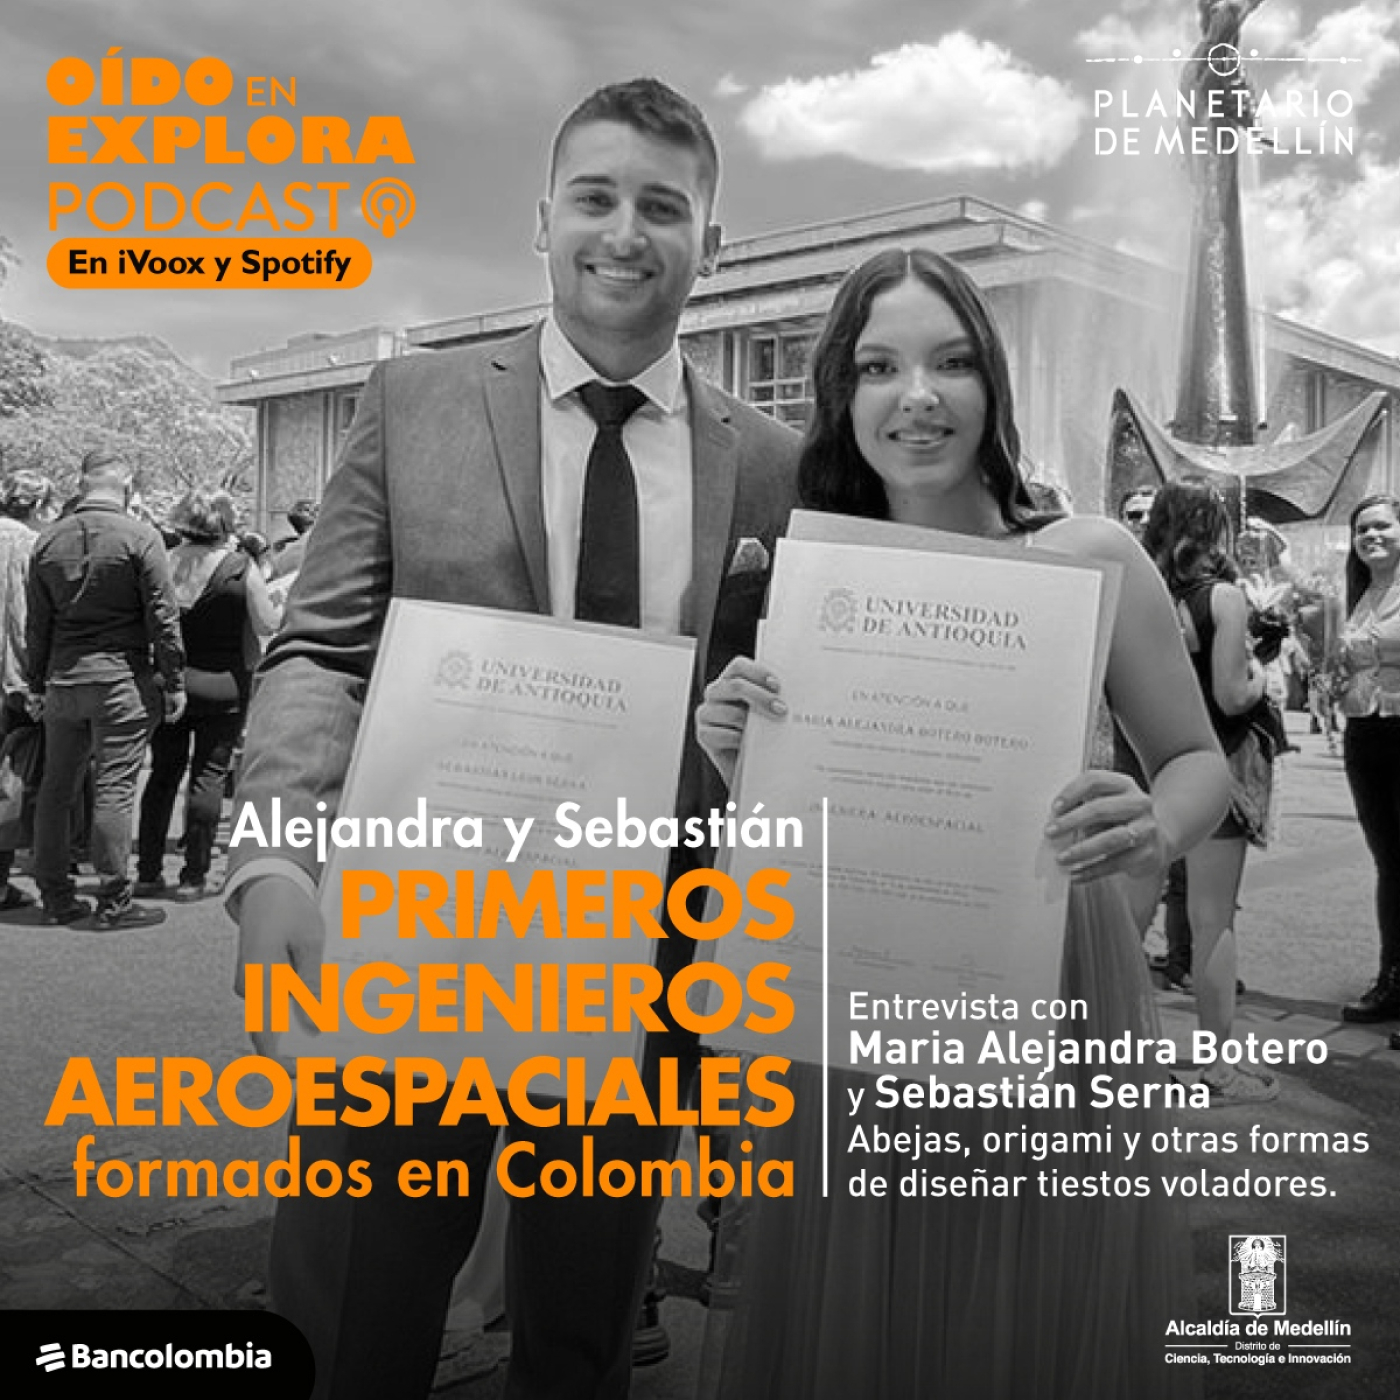 Alejandra y Sebastián, primeros ingenieros aeroespaciales formados en Colombia